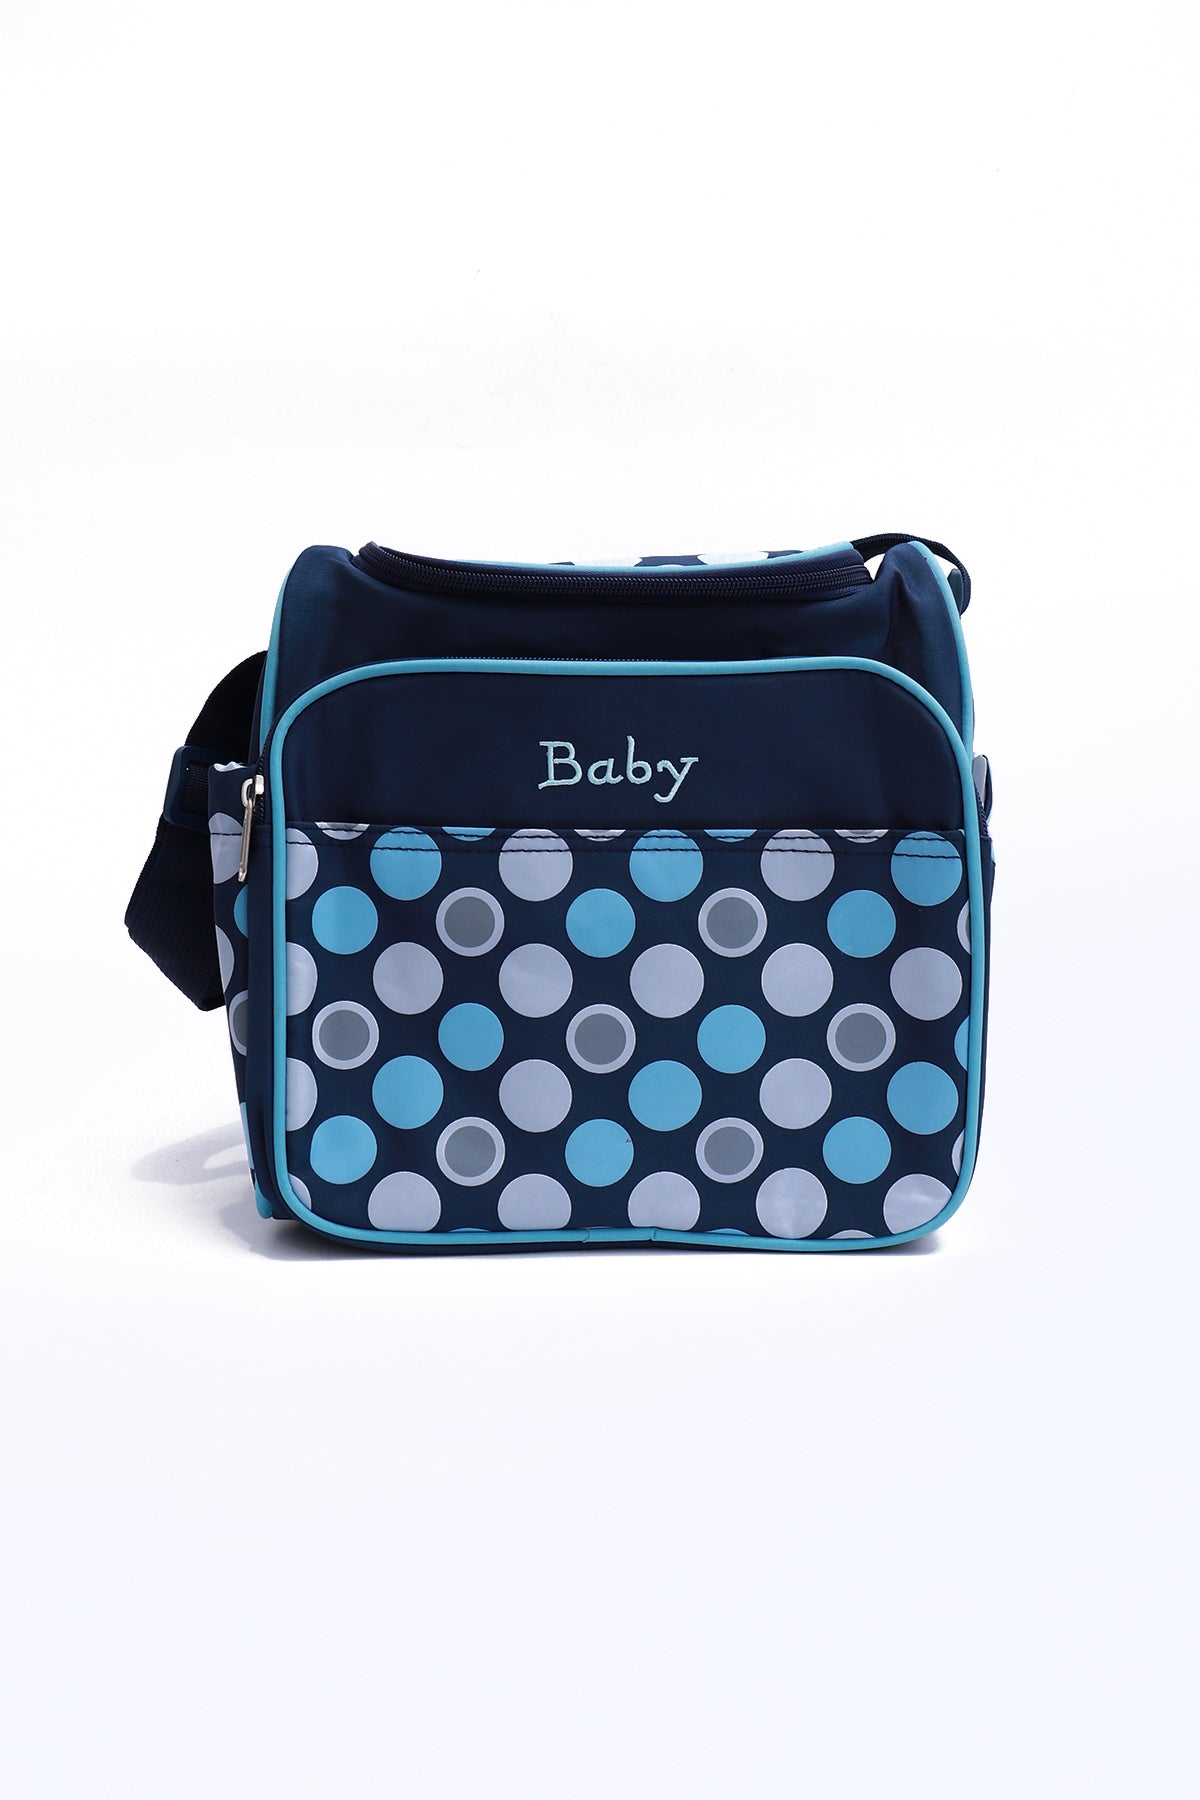 Baby Diaper Bag